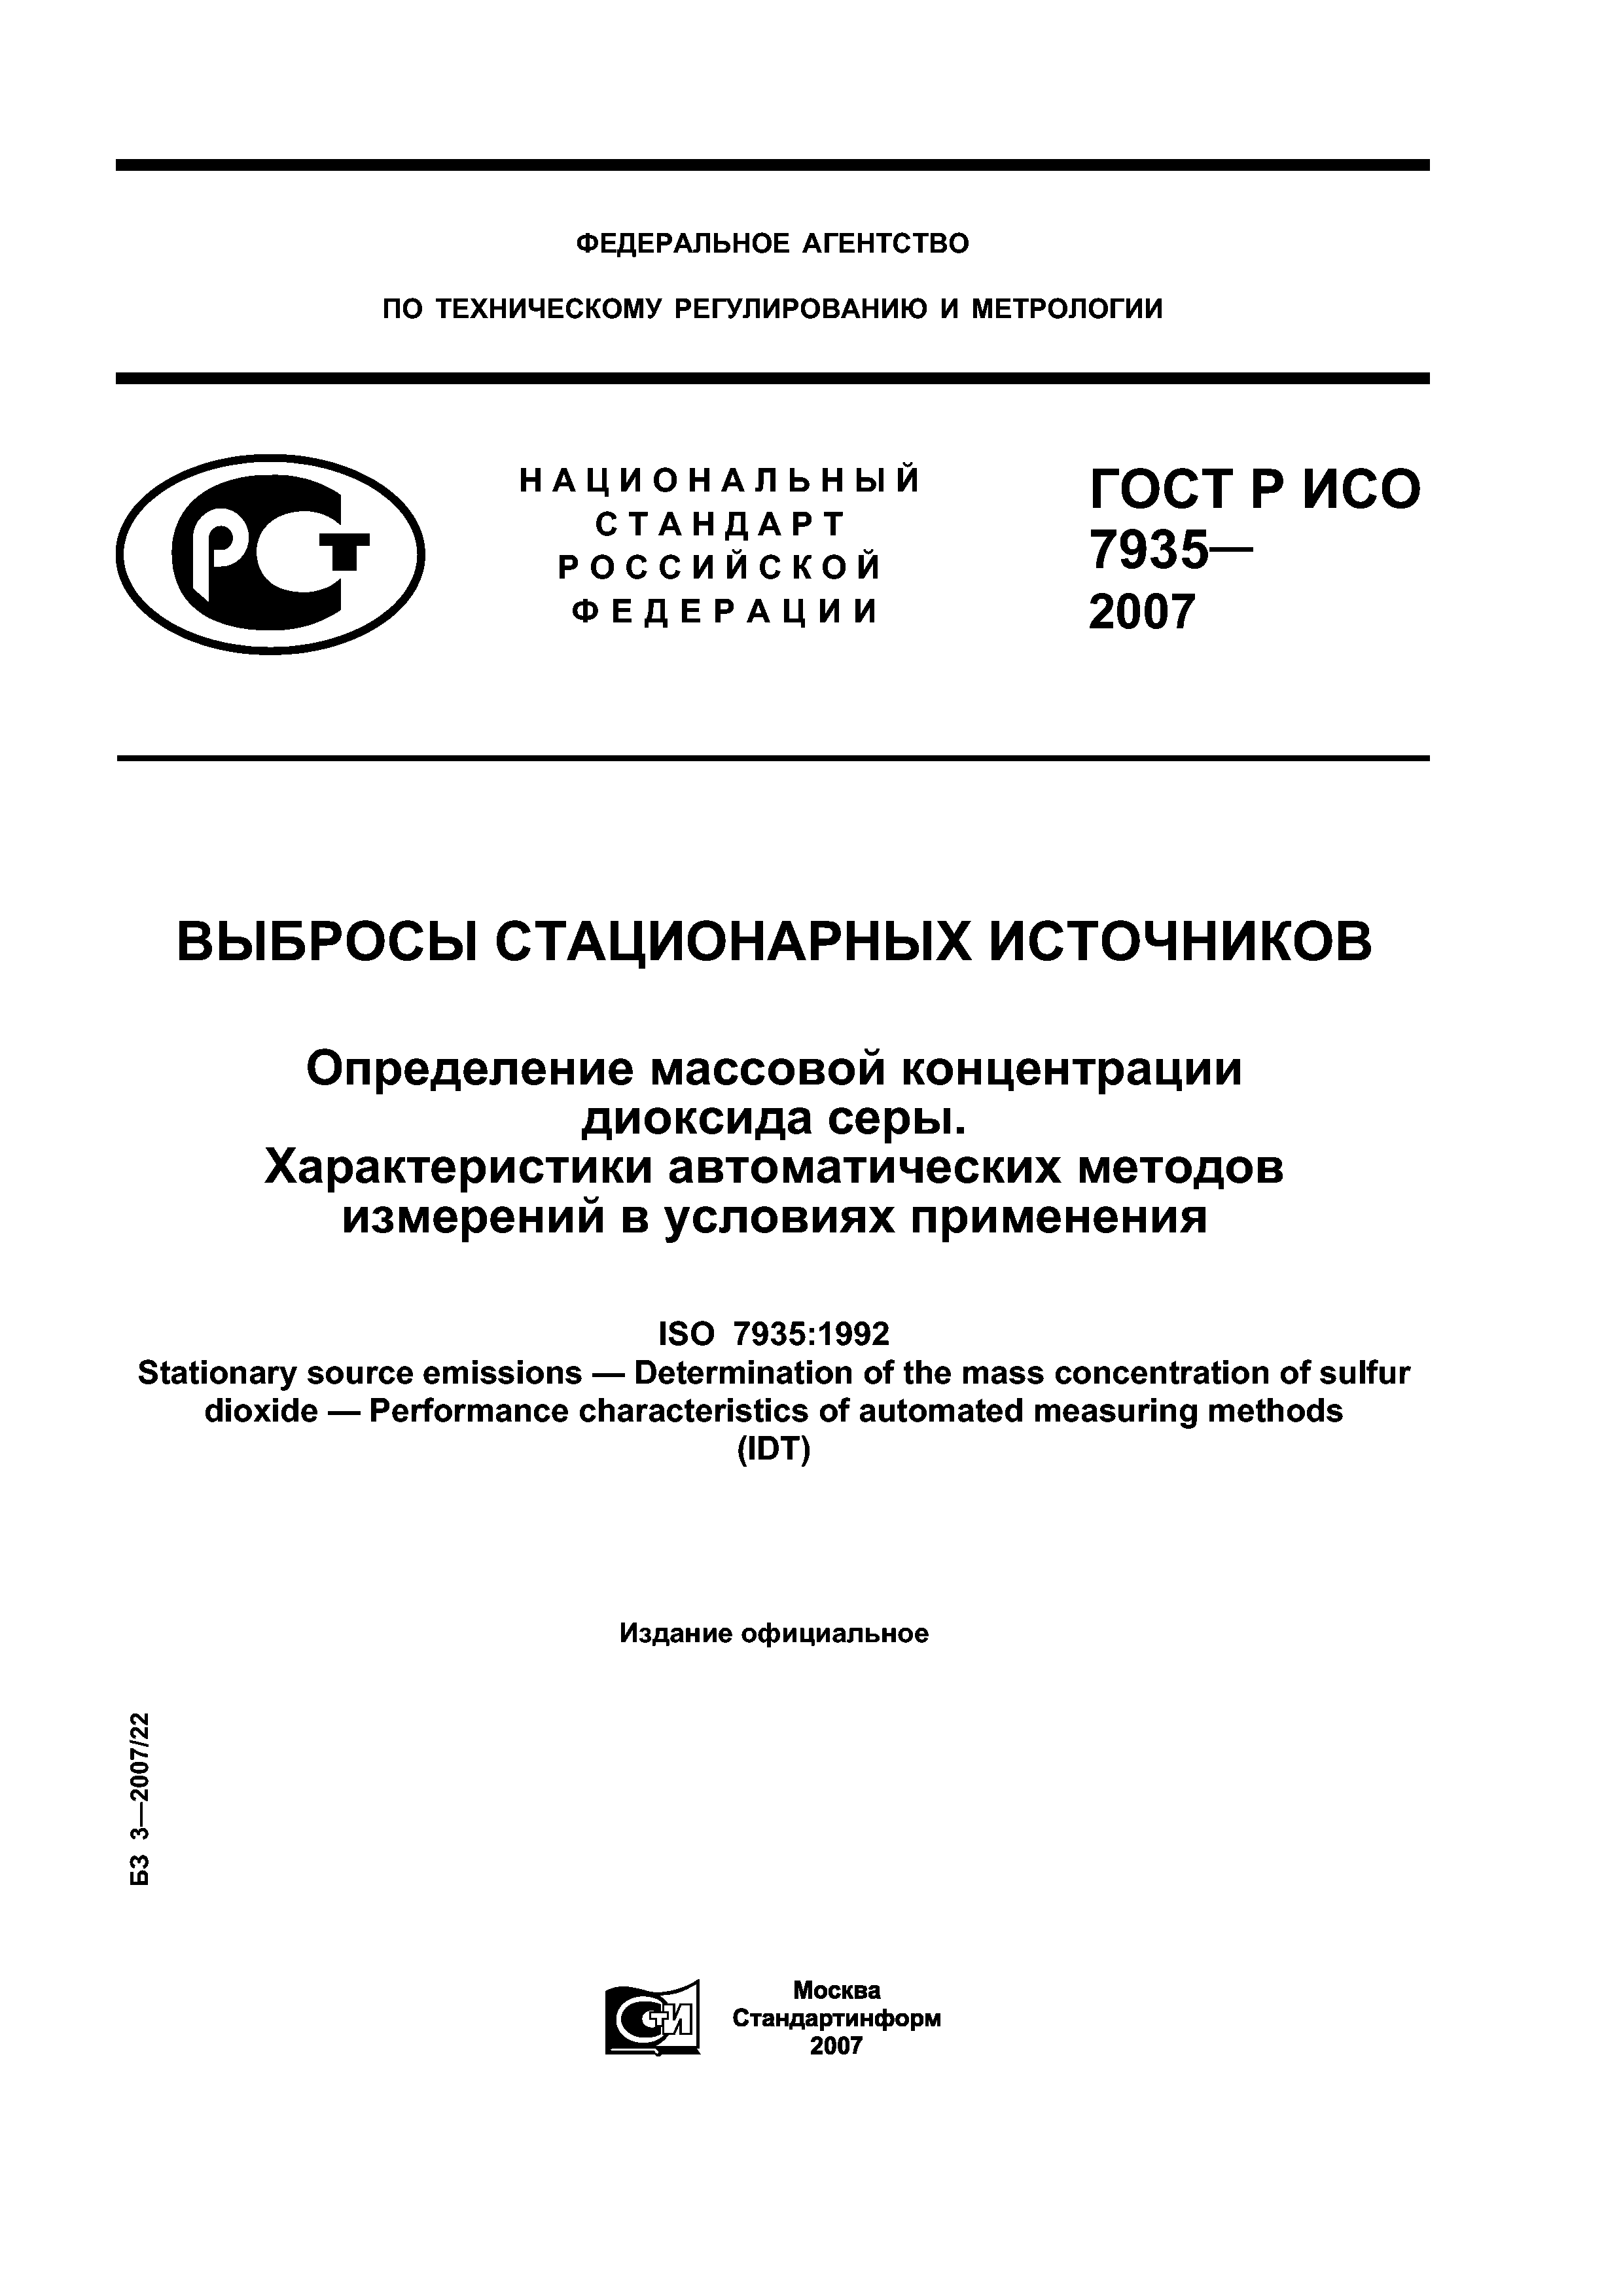 ГОСТ Р ИСО 7935-2007